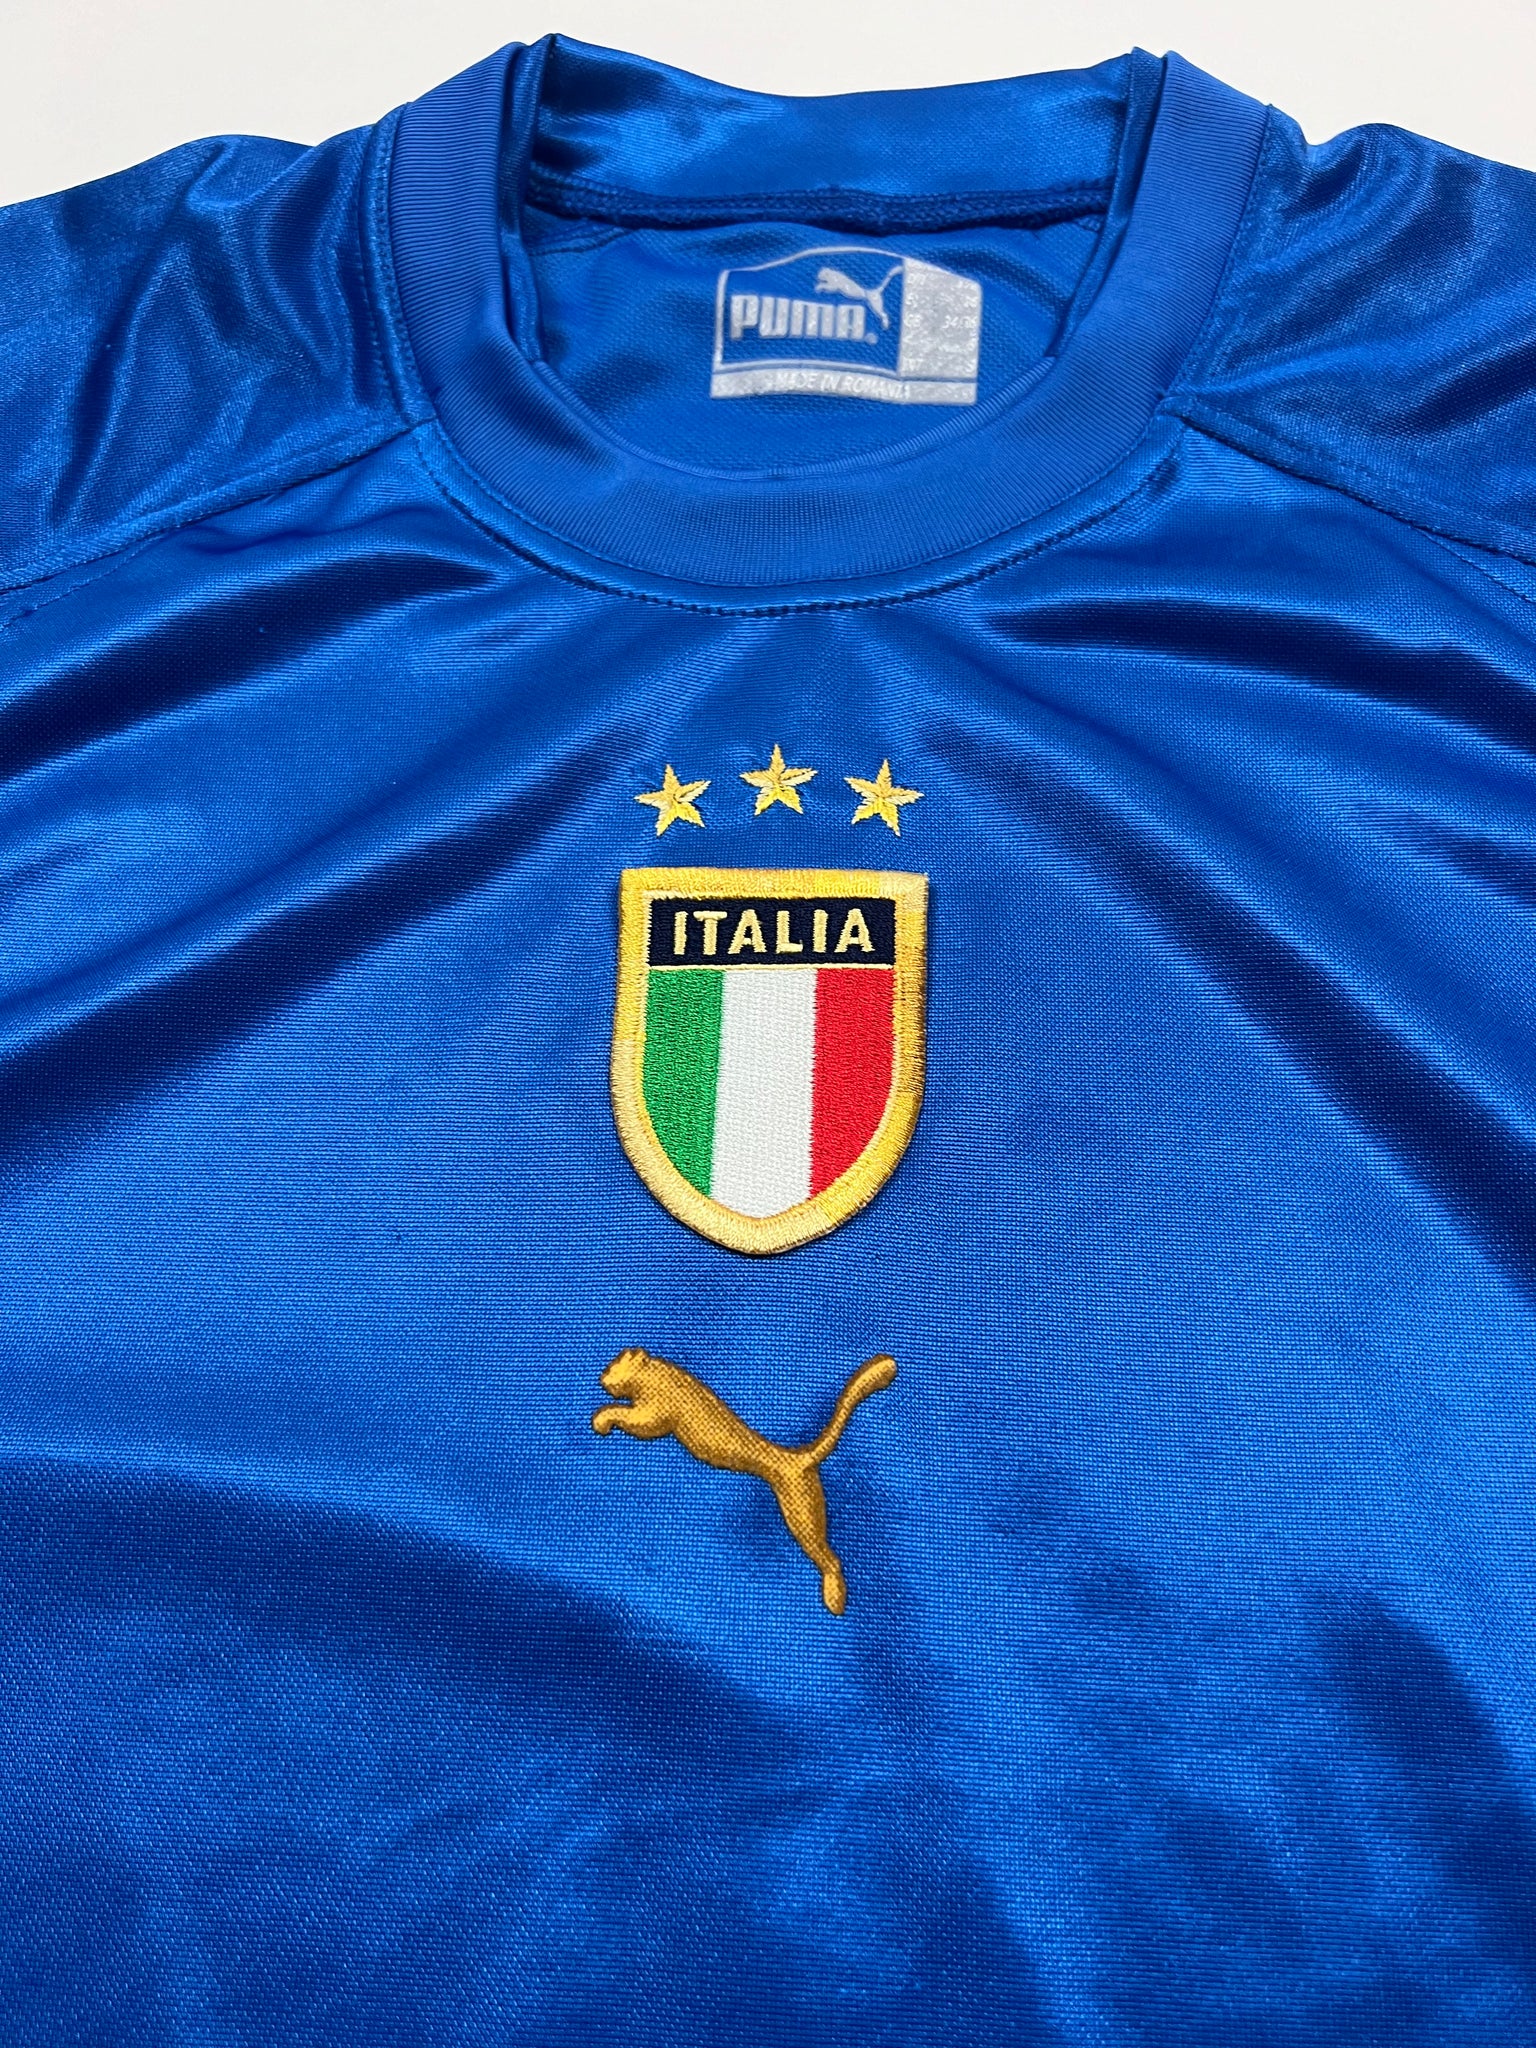 Puma Italy Jersey (S)